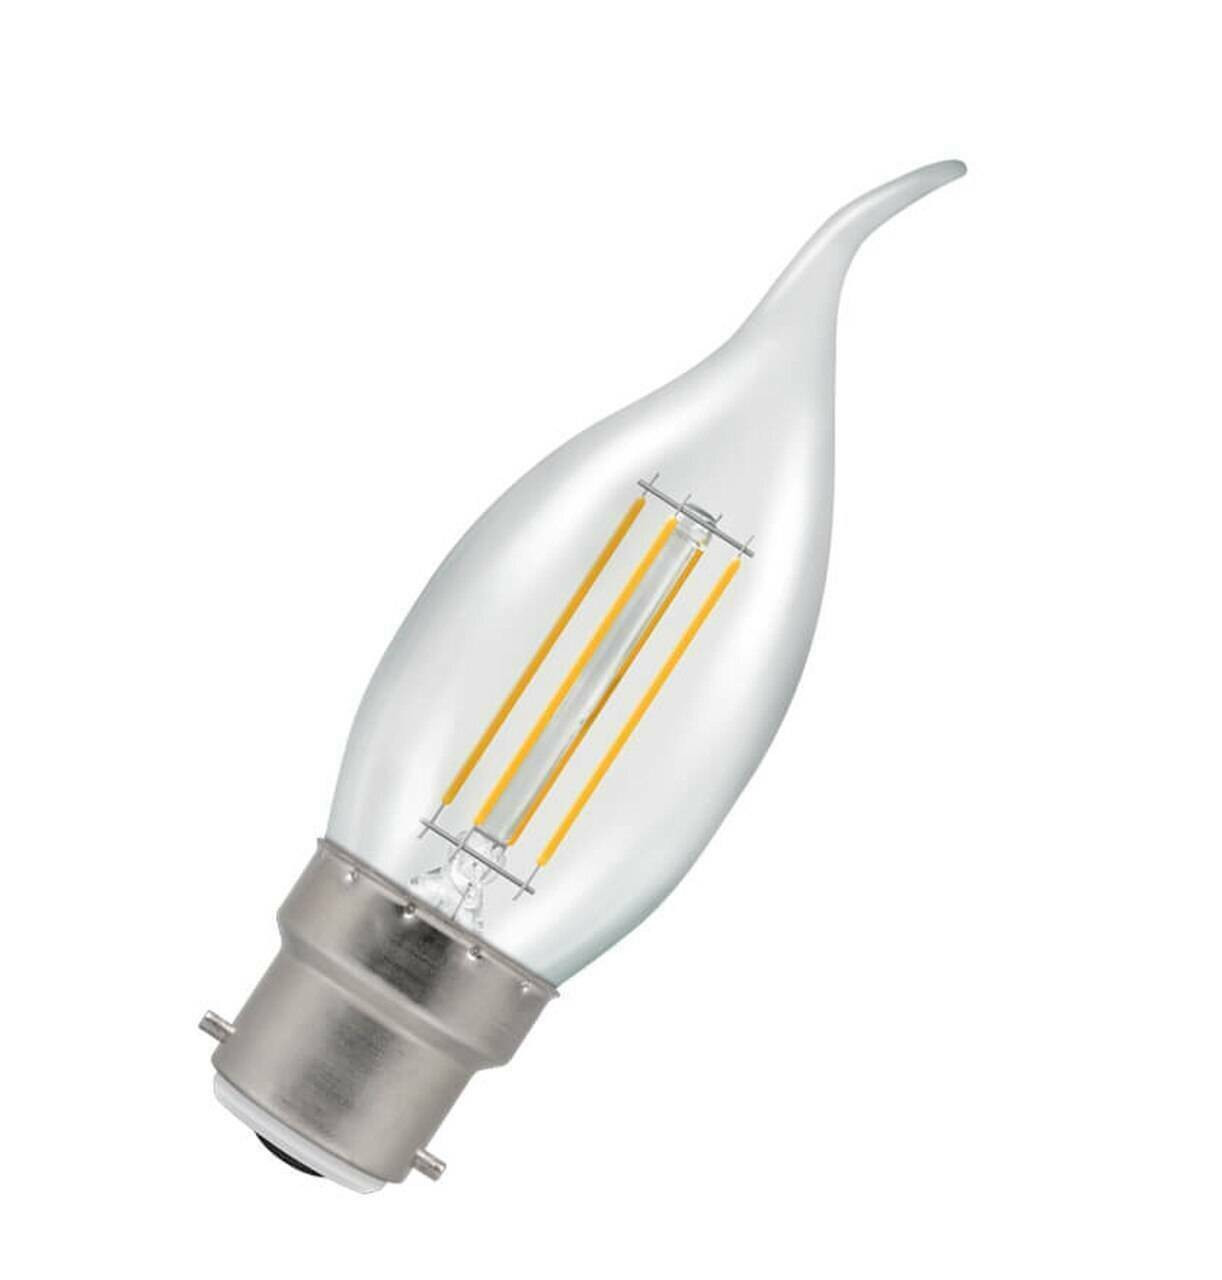 B22 Ampoule led standard Claire LED effet filament 6,5w 2700